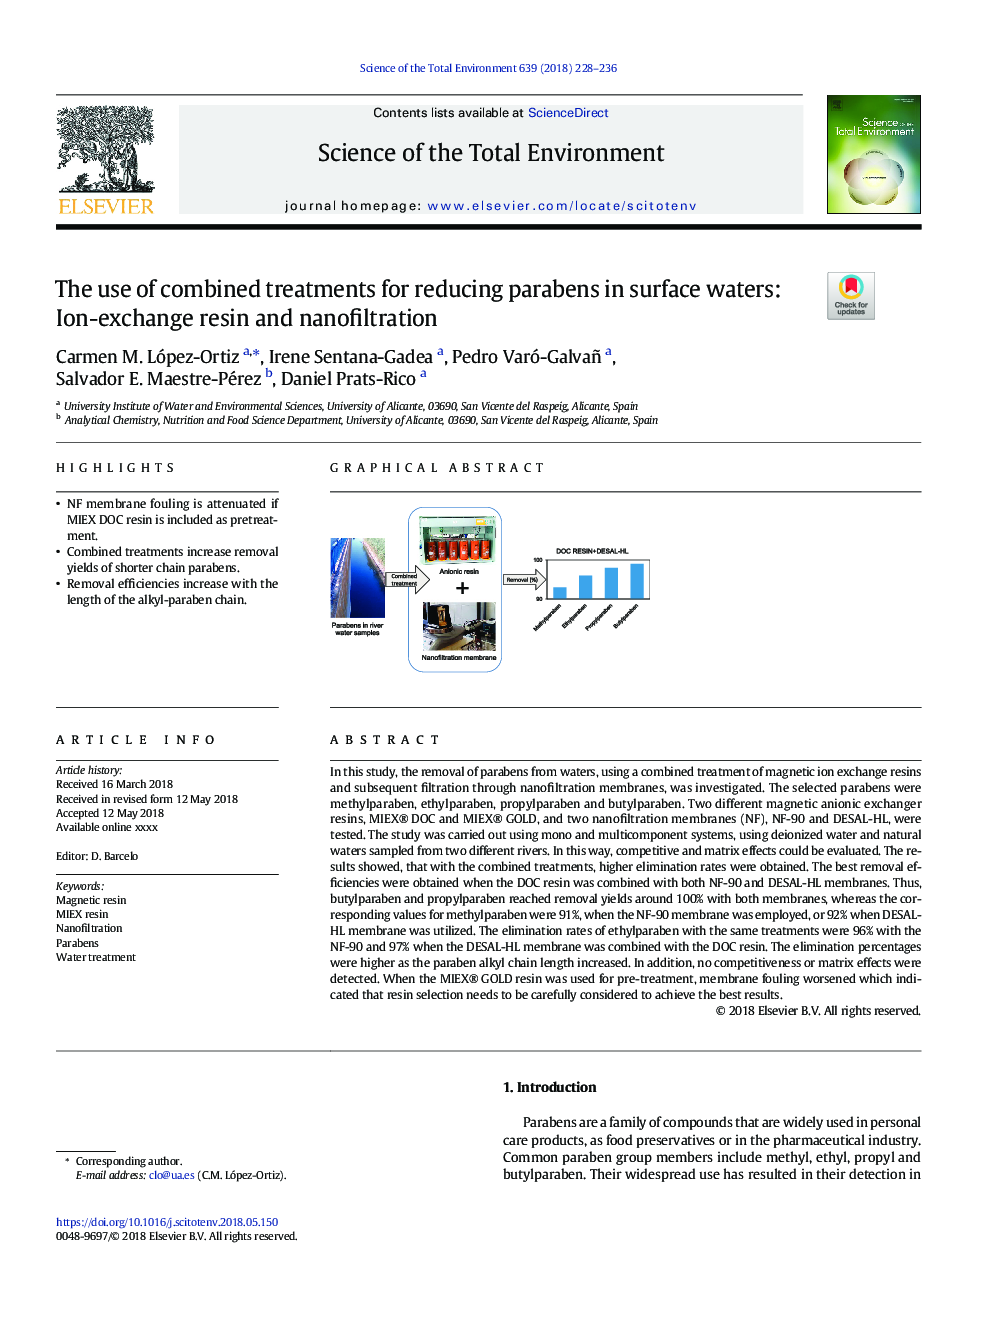 استفاده از ترکیبات ترکیبی برای کاهش پارابنها در آبهای سطحی: رزین یون تبادل و نانوفیلتراسیون 